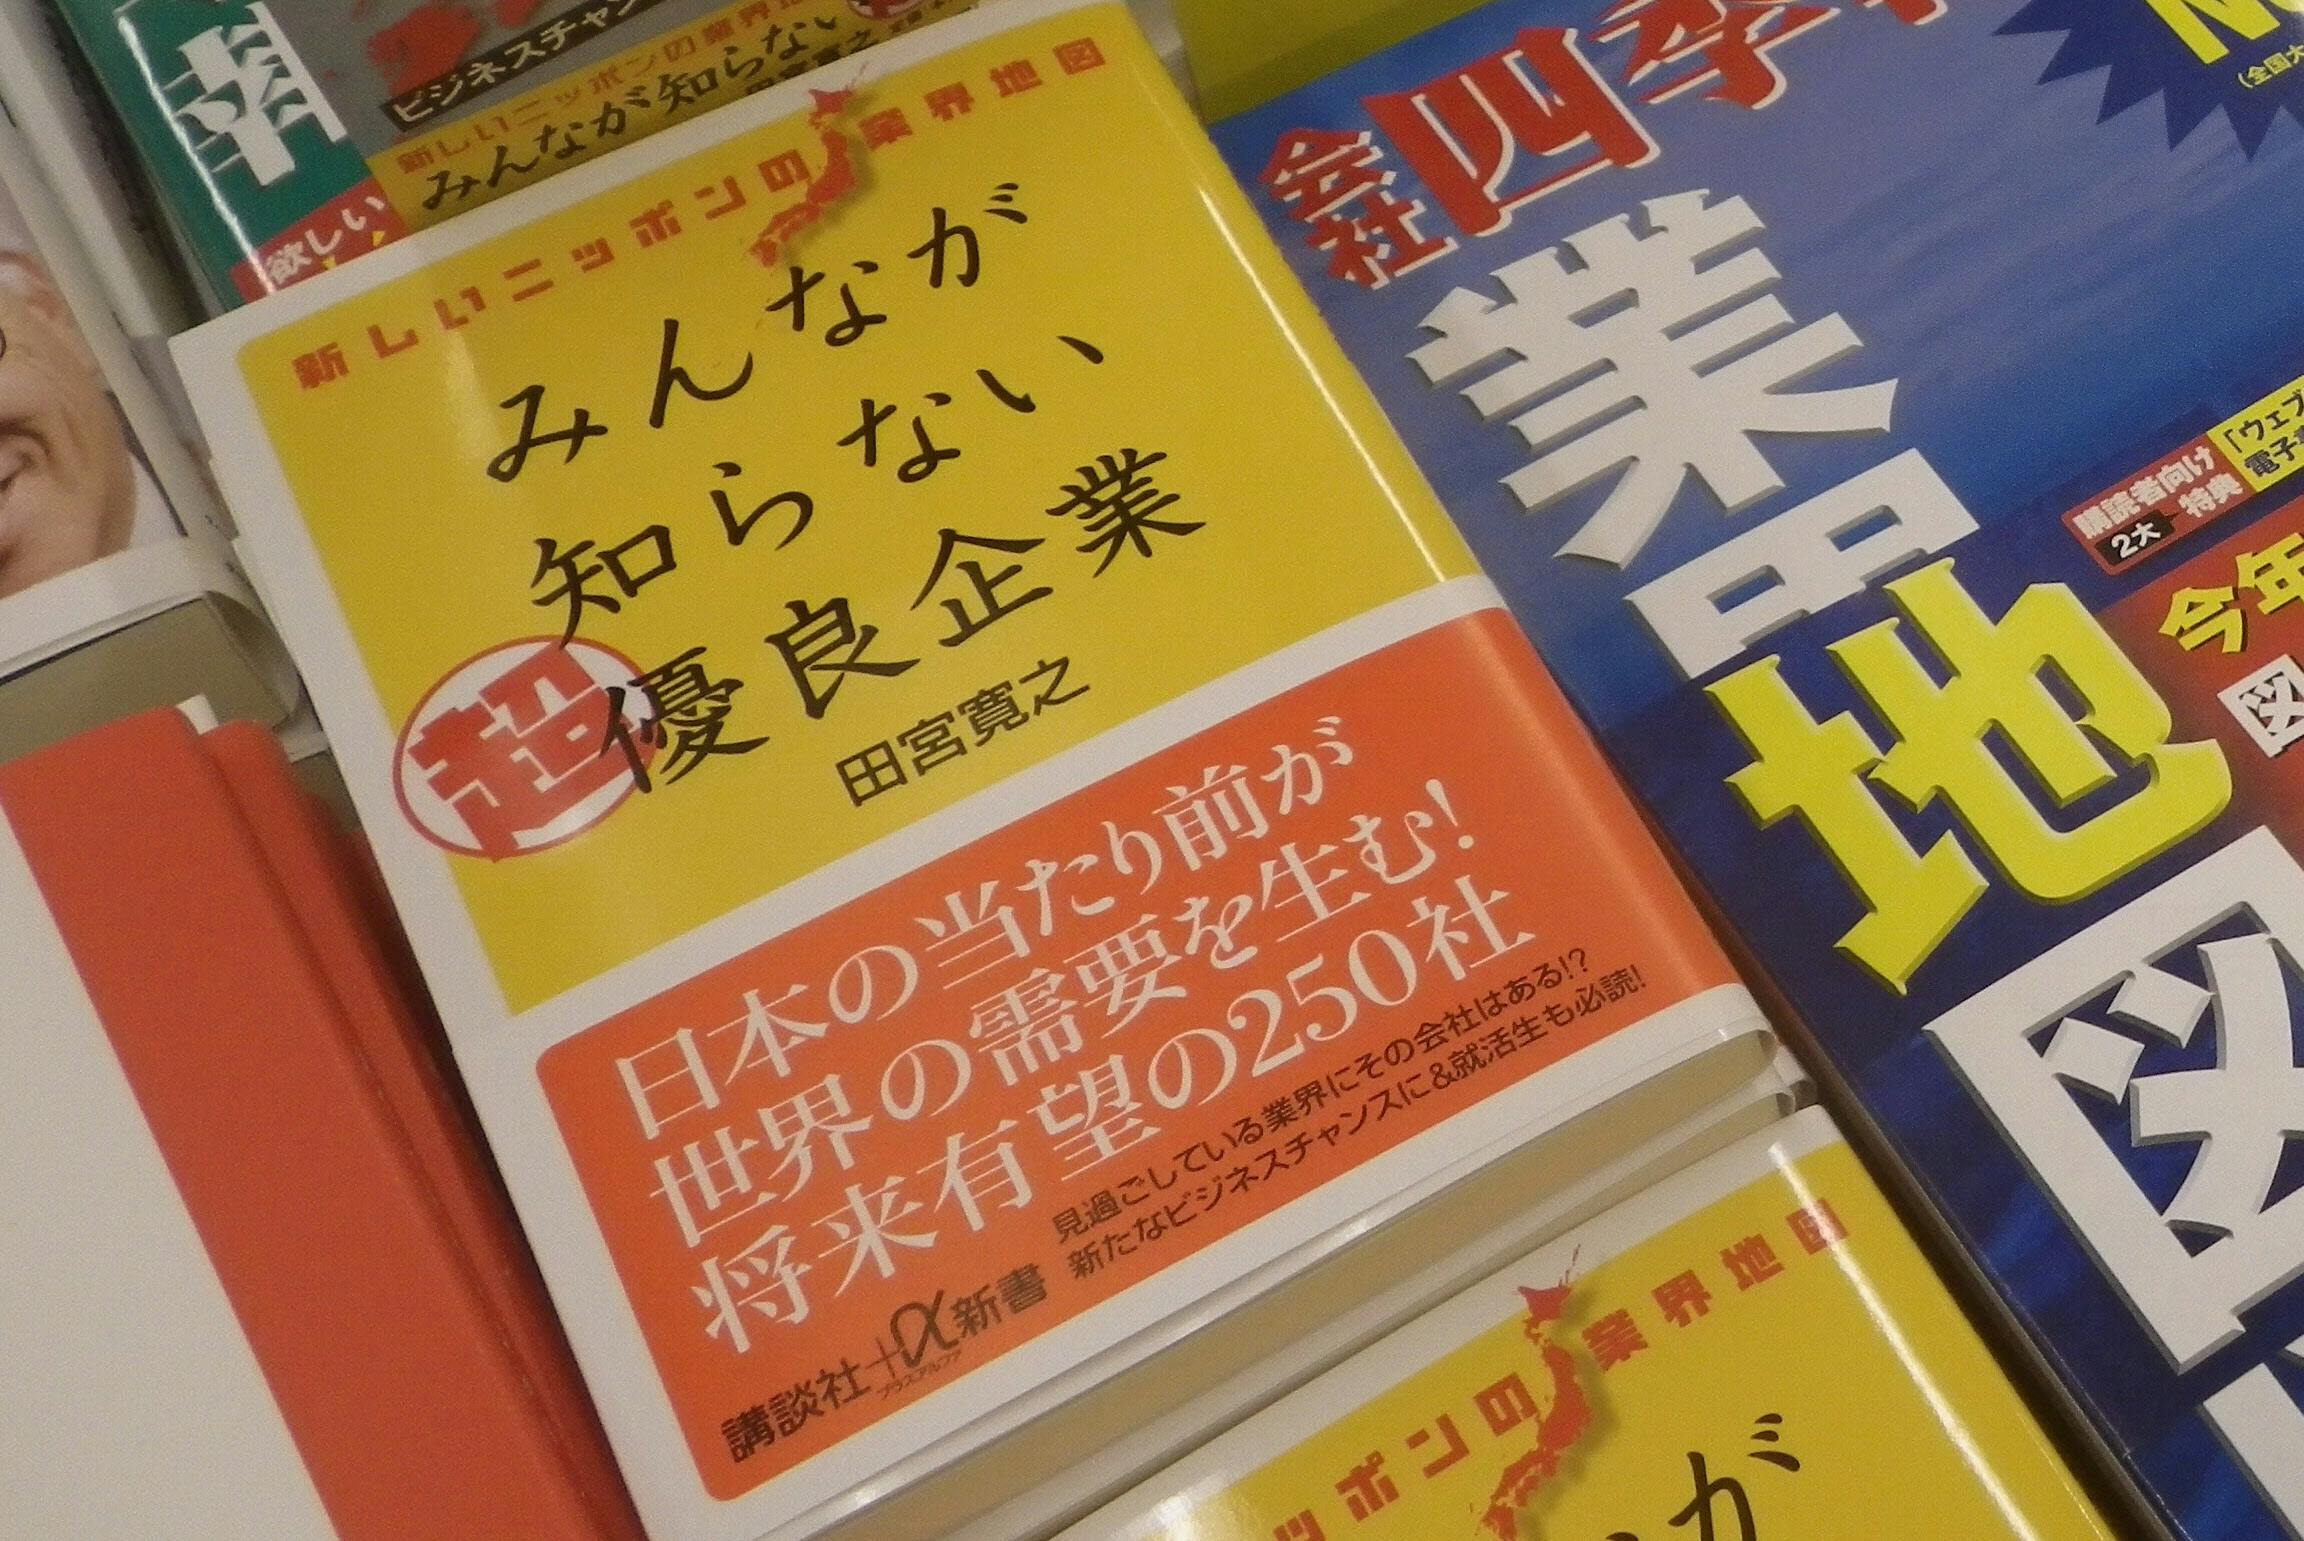 八重洲で若手注目の書籍 みんなが知らない超優良企業 ブック Nikkei Style